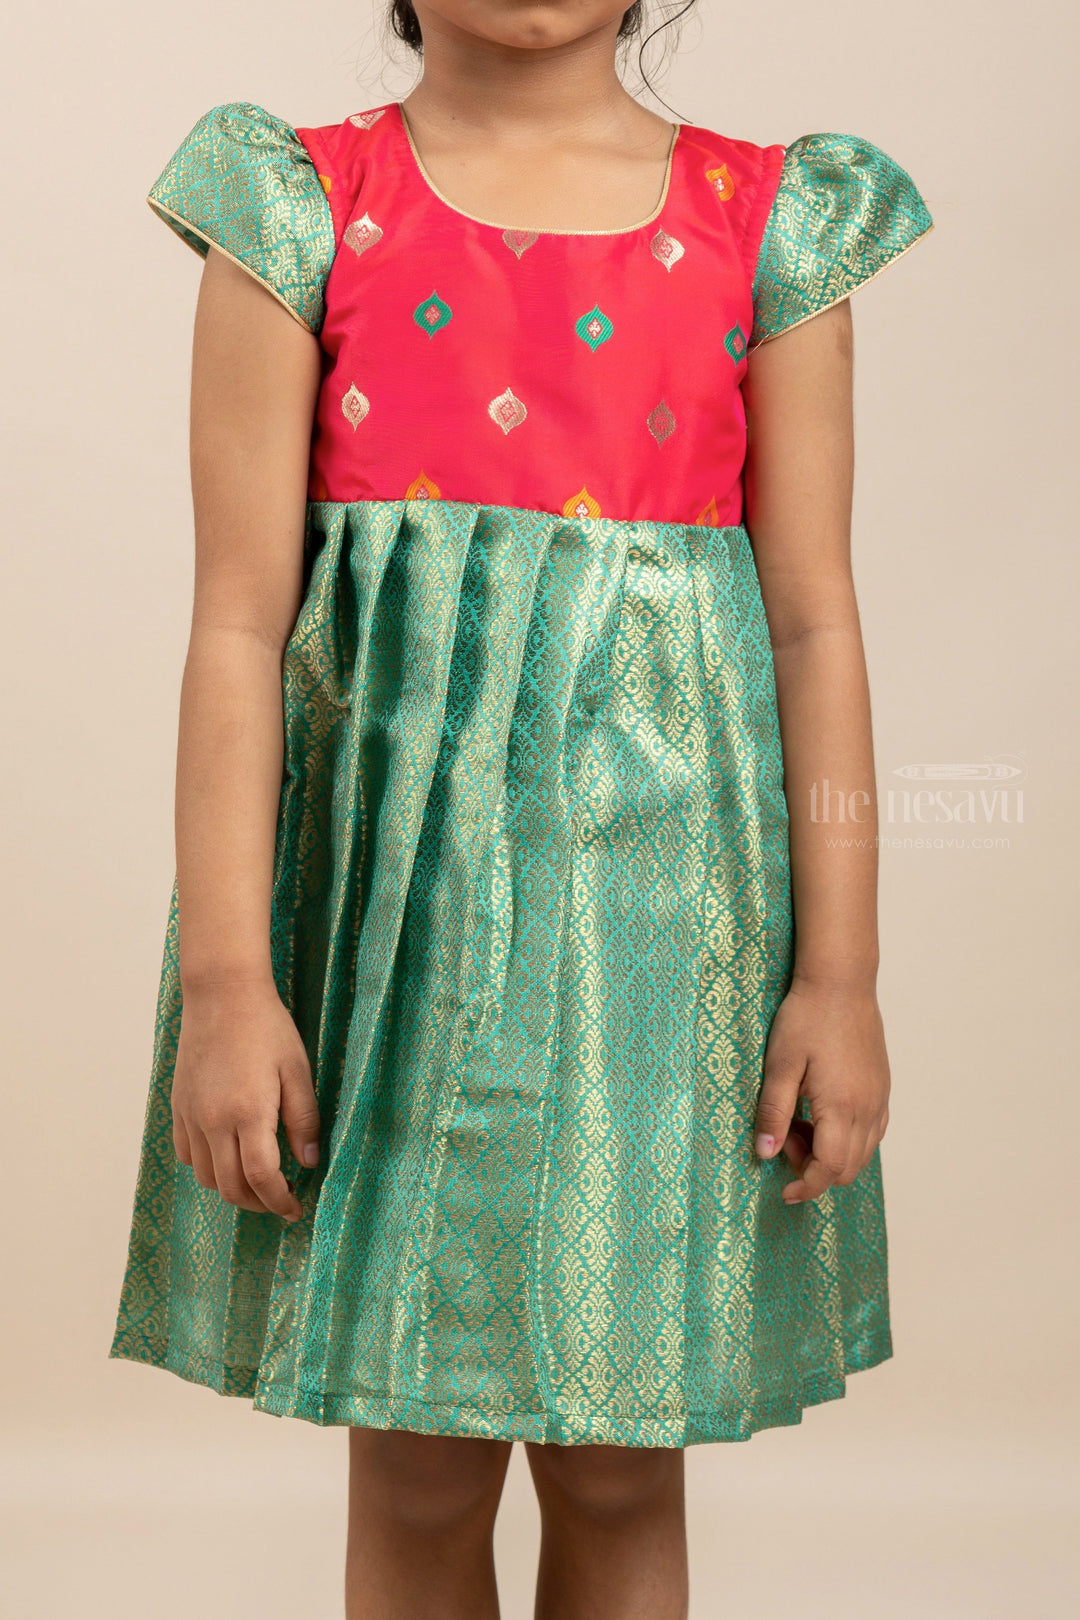 The Nesavu Silk Frock Green Intricate Banarasi Silk Frock For New Born Baby Girls Nesavu Buy Silk Gown For Kids Online | Teal Blue Pattu Dress Ideas | The Nesavu